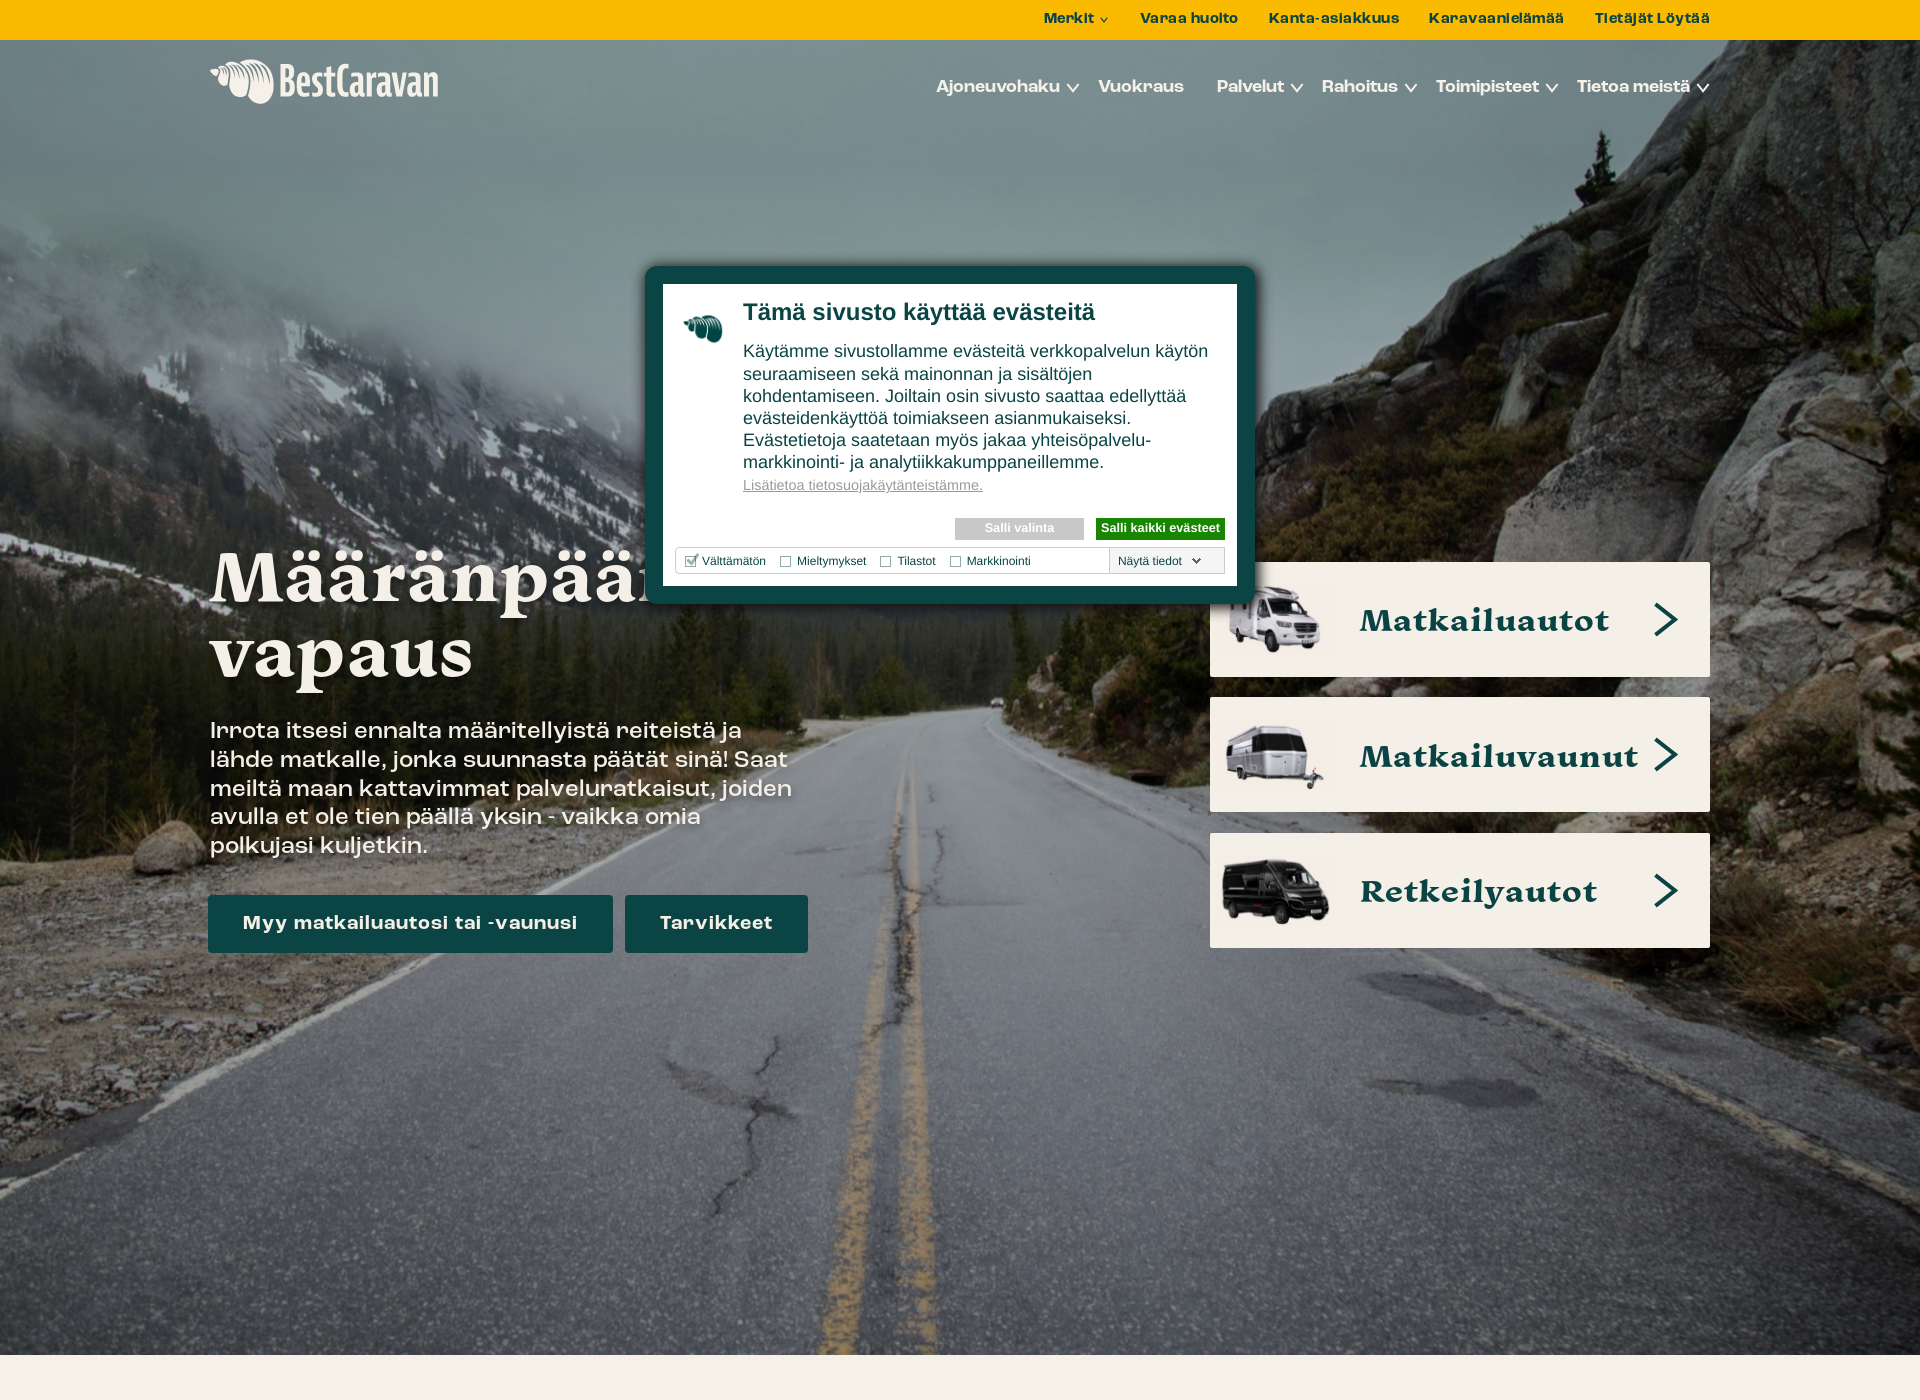 Screenshot for karavaanielamaa.fi